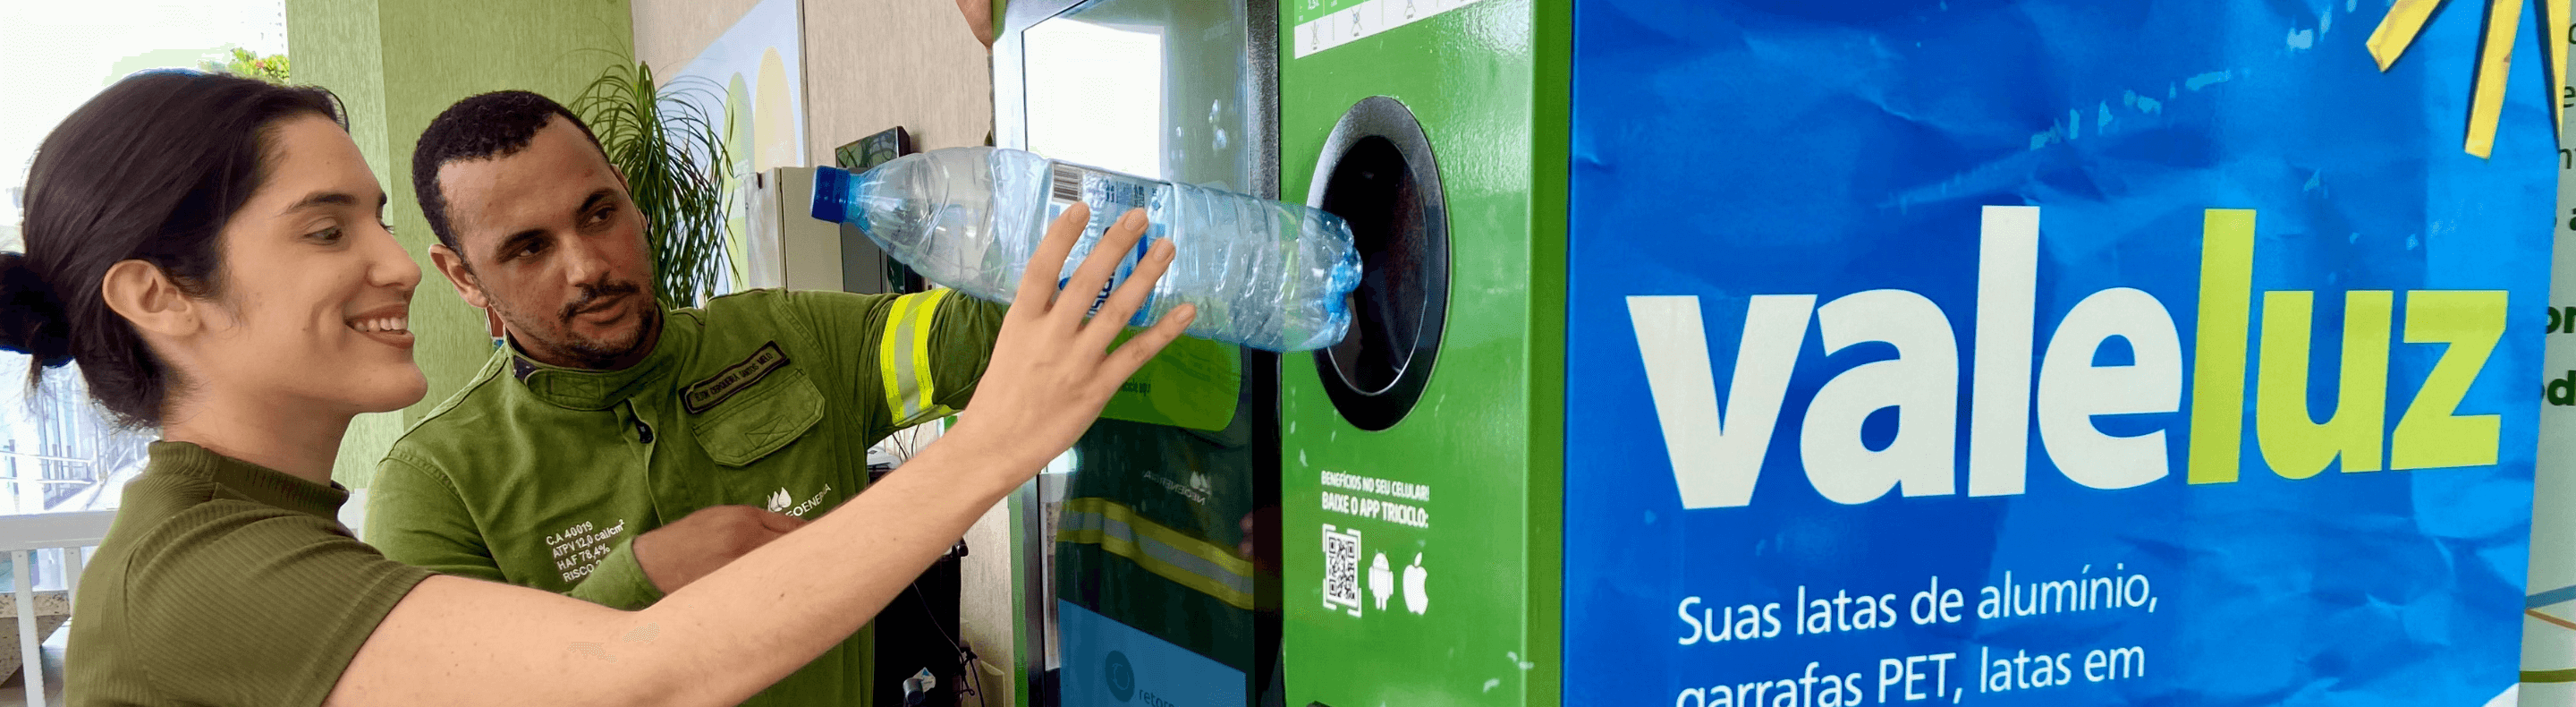 Profissional da Neoenergia auxiliando cliente na troca de resíduos recicláveis por descontos